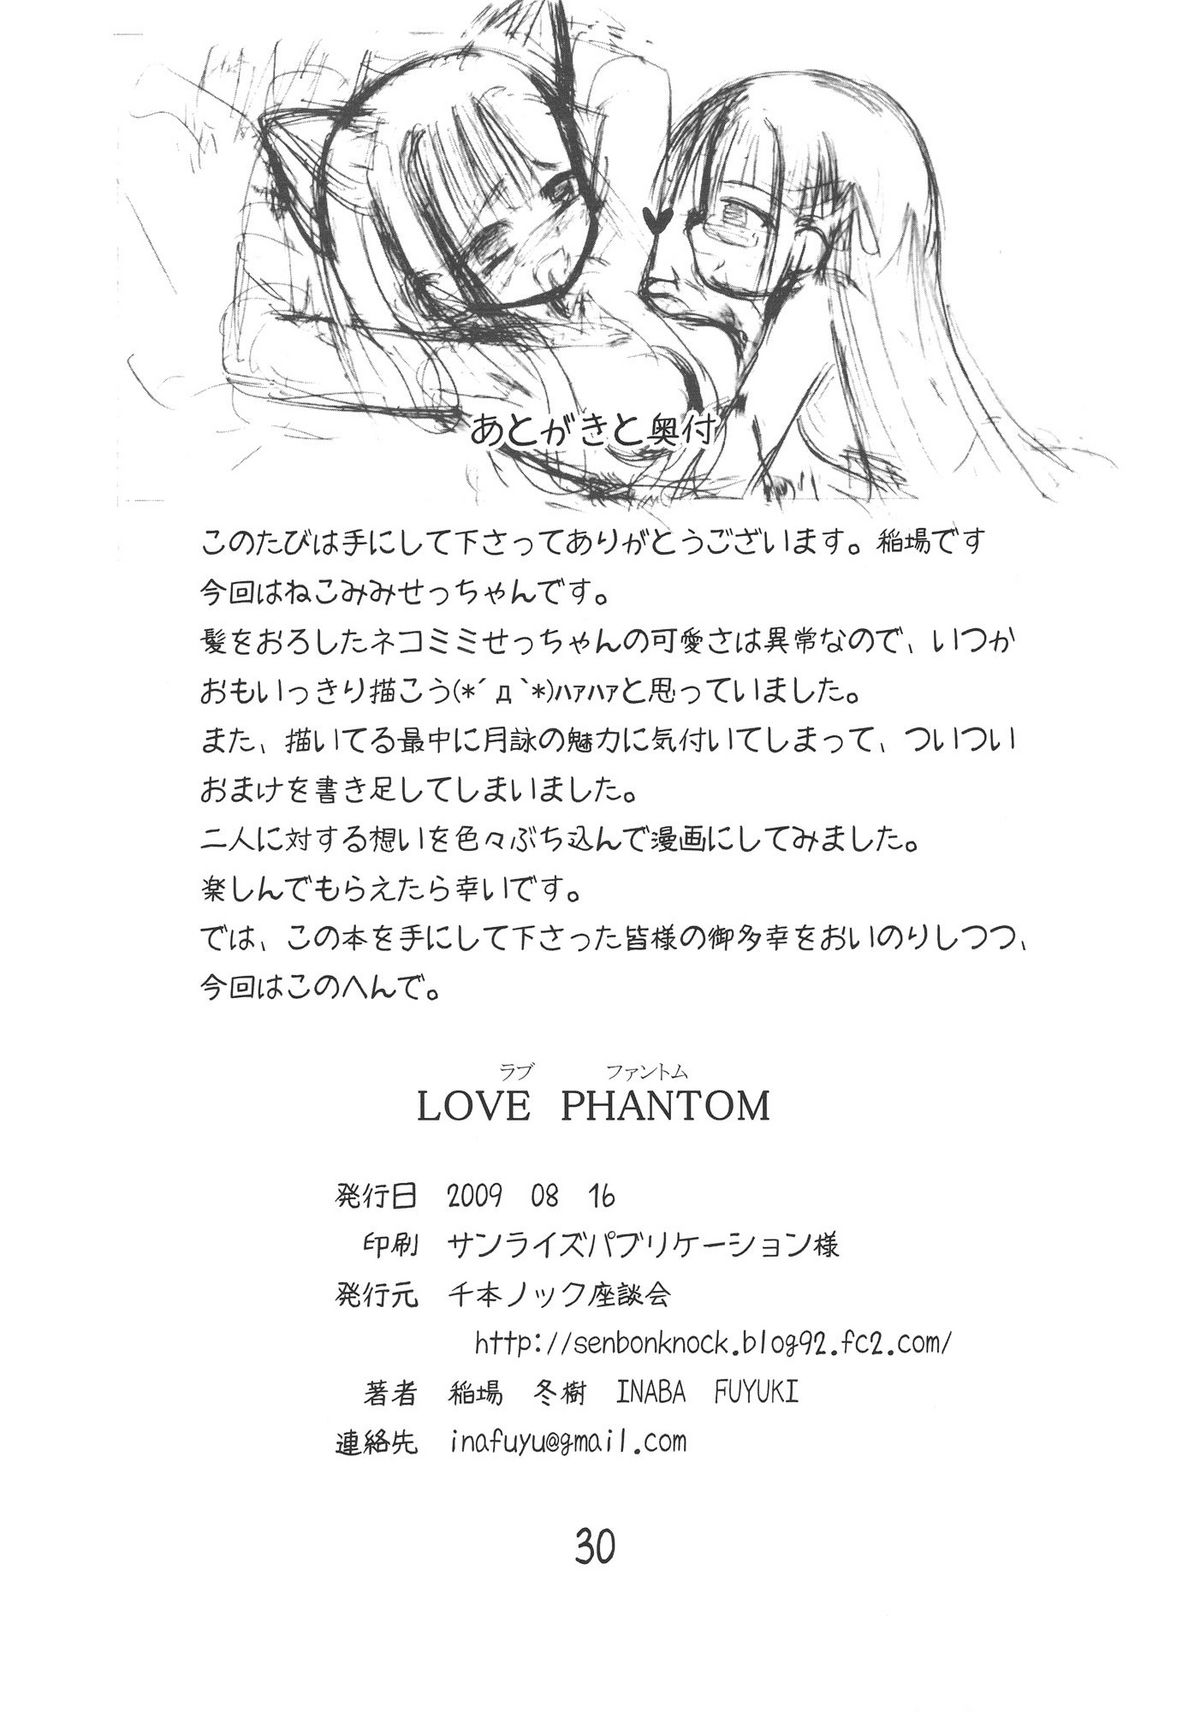 [千本ノック座談会] LOVE PHANTOM (ネギま！)